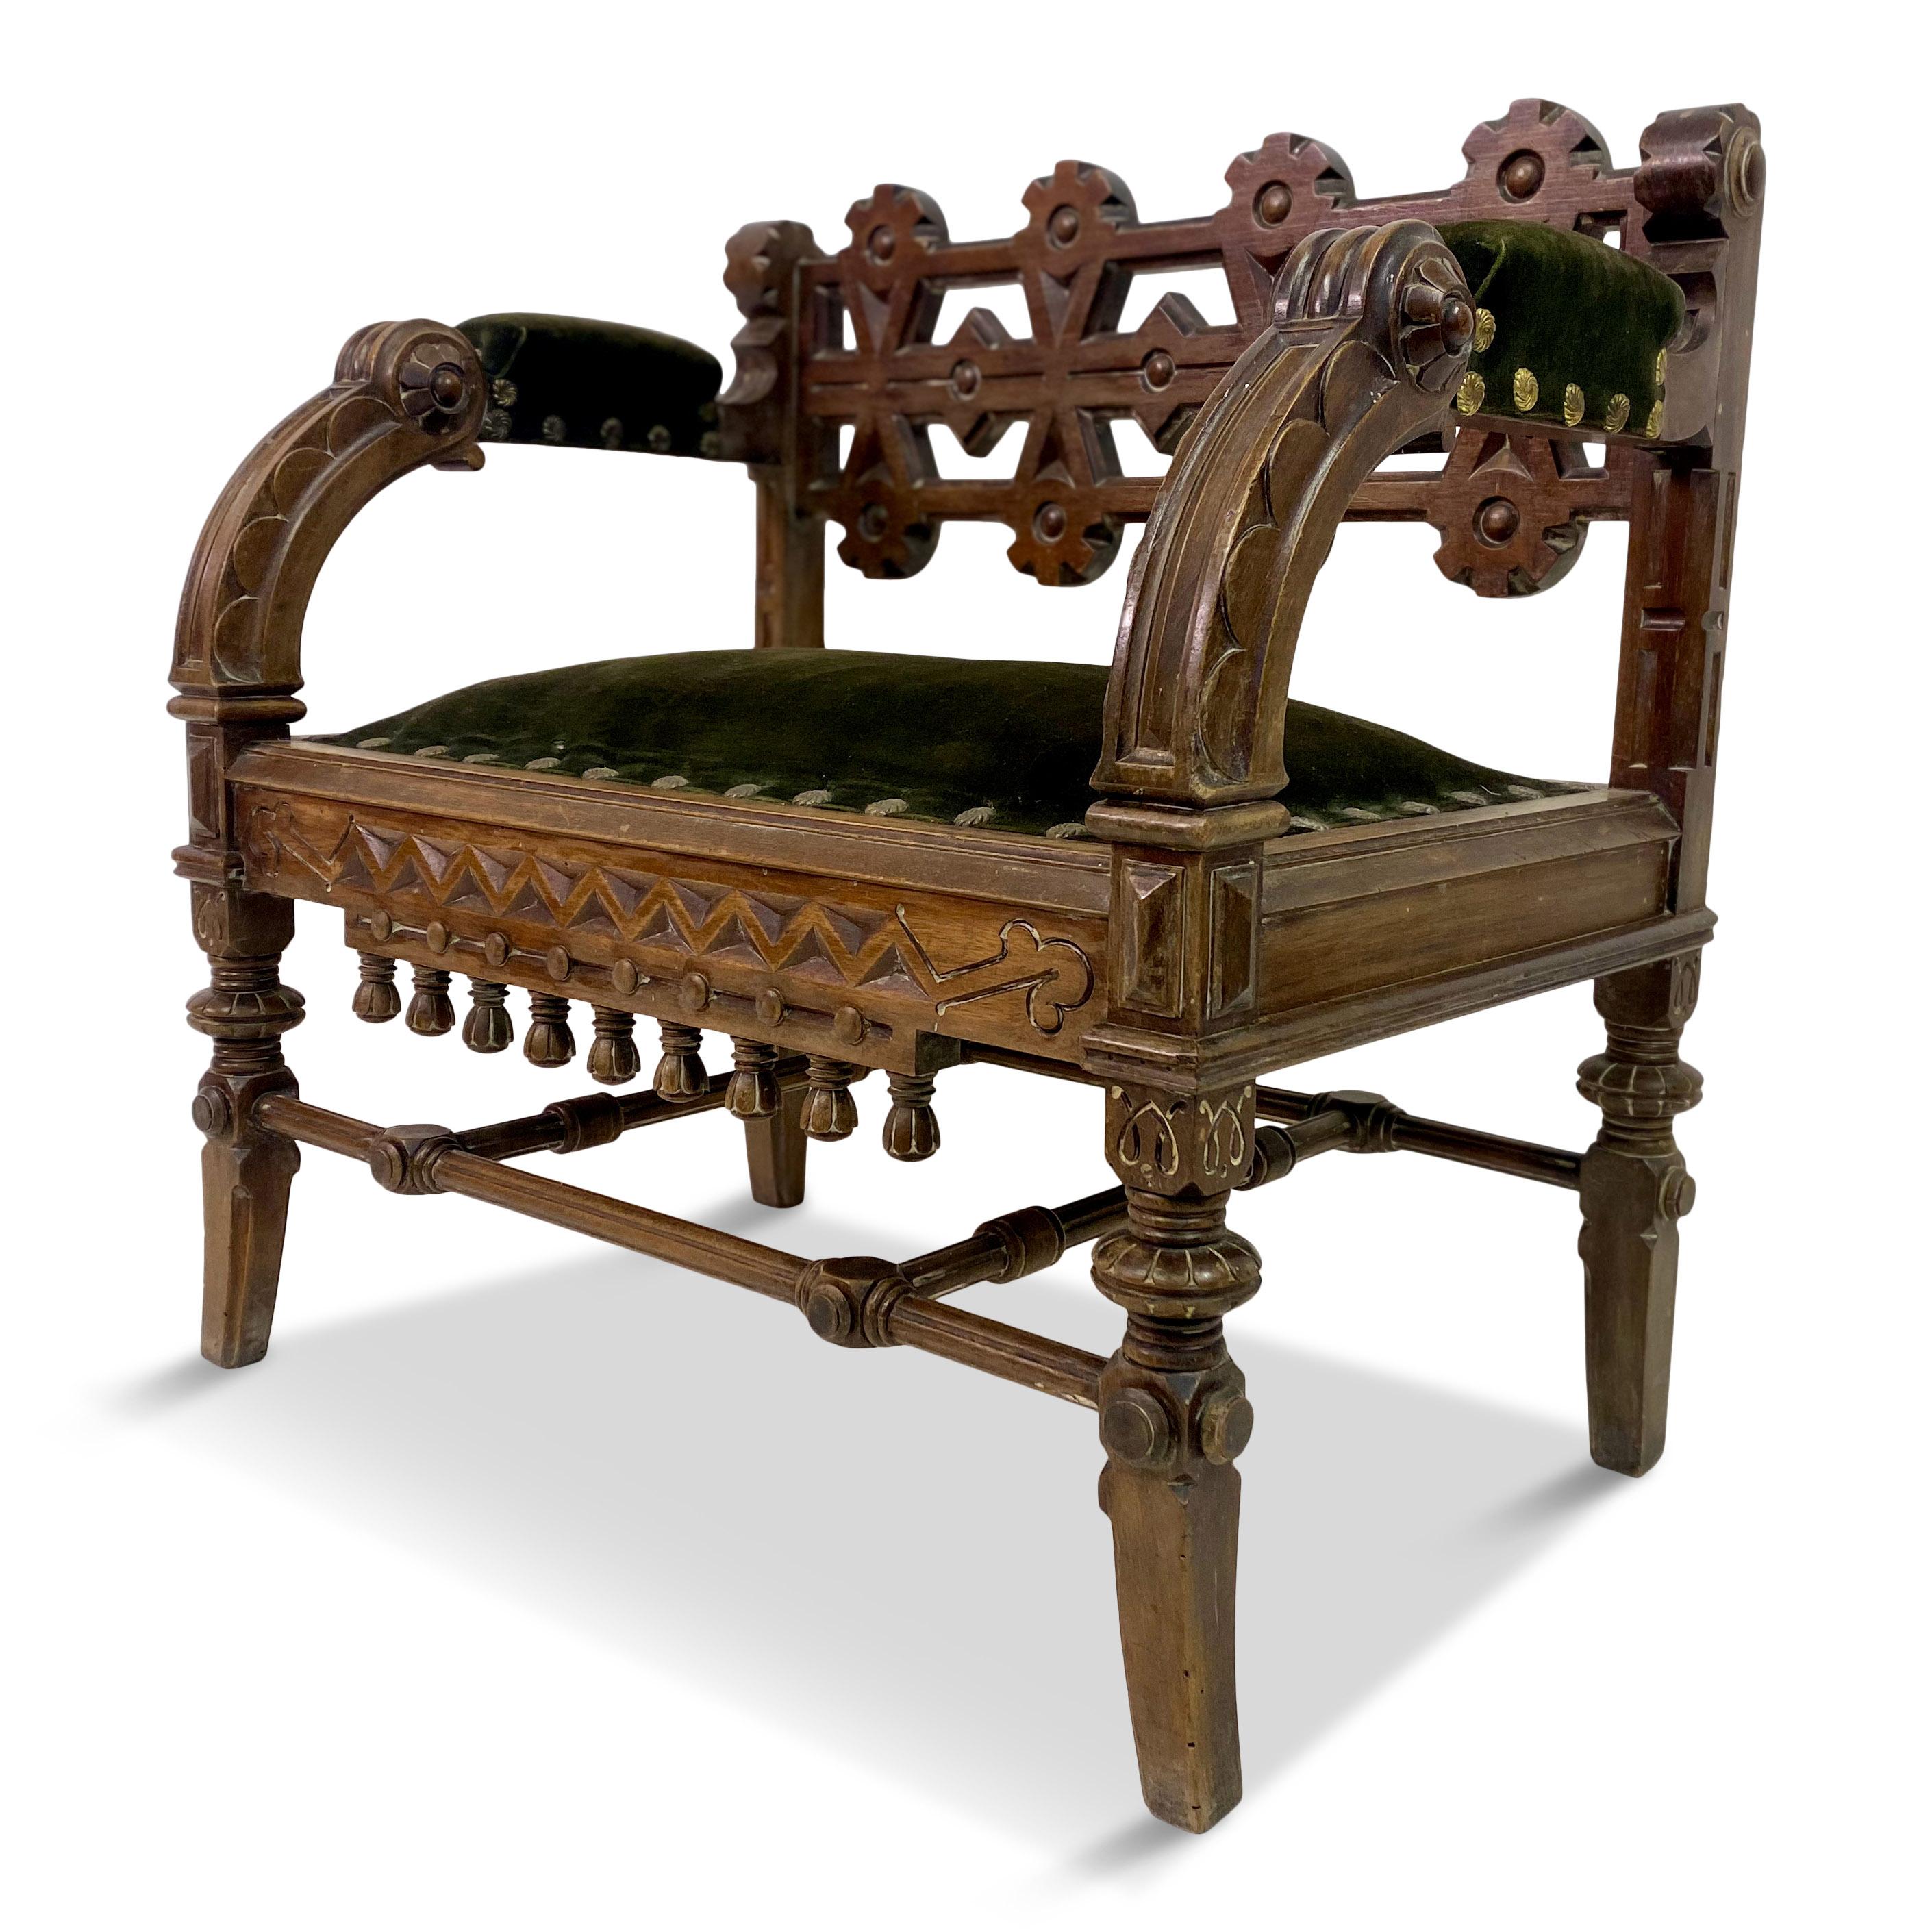 Gotischer Stuhl

Amerikanische Ästhetik-Bewegung

Walnuss

Original Samtpolsterung

amerika im 19. Jahrhundert

46cm Sitzhöhe.